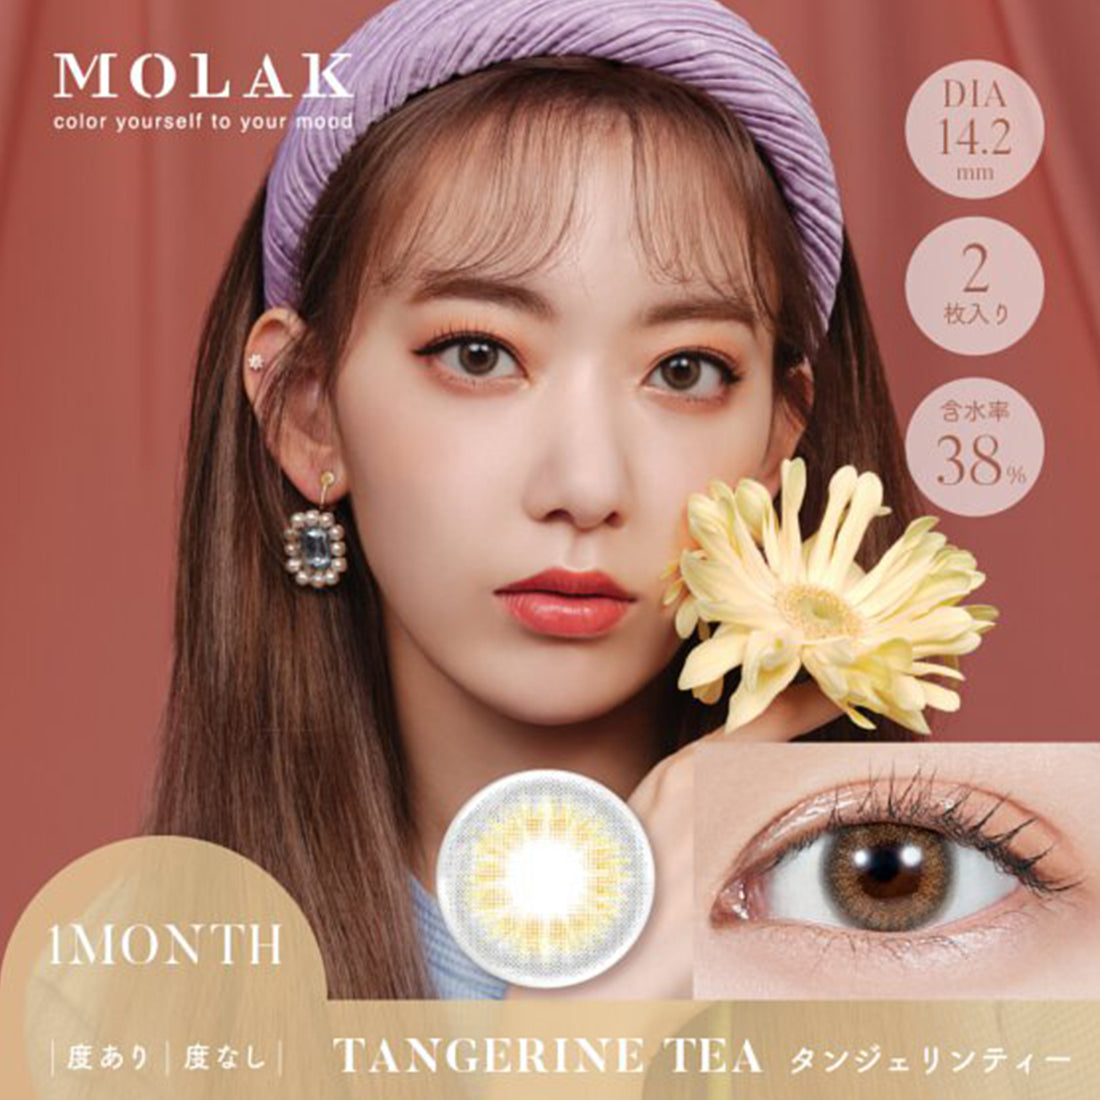 MOLAK 1Month Color Lens-Tangerine Tea 2pcs